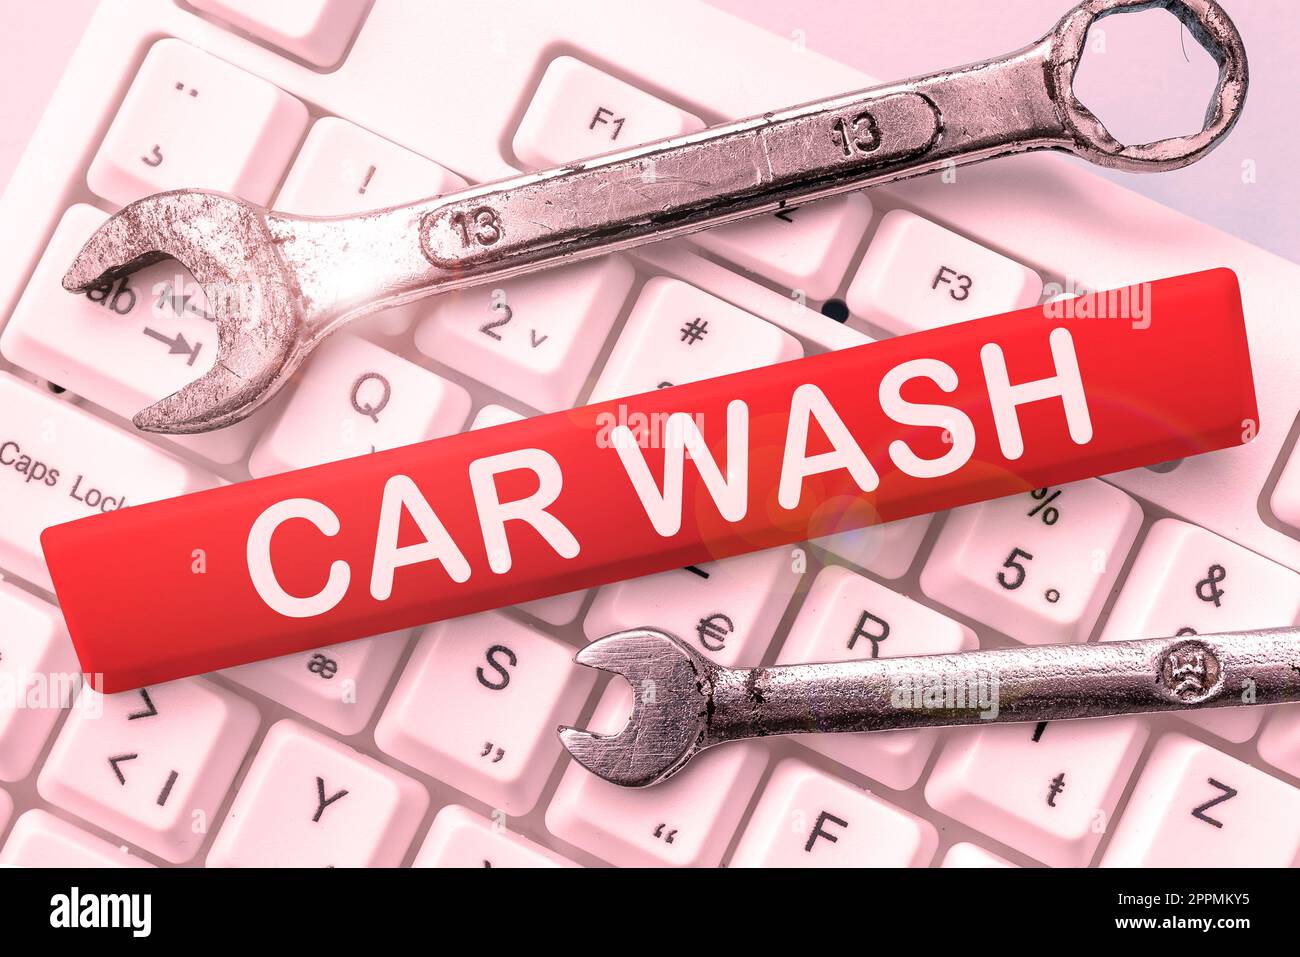 Présentoir conceptuel car Wash. Mot écrit sur un bâtiment contenant des équipements pour laver des voitures ou d'autres véhicules Banque D'Images